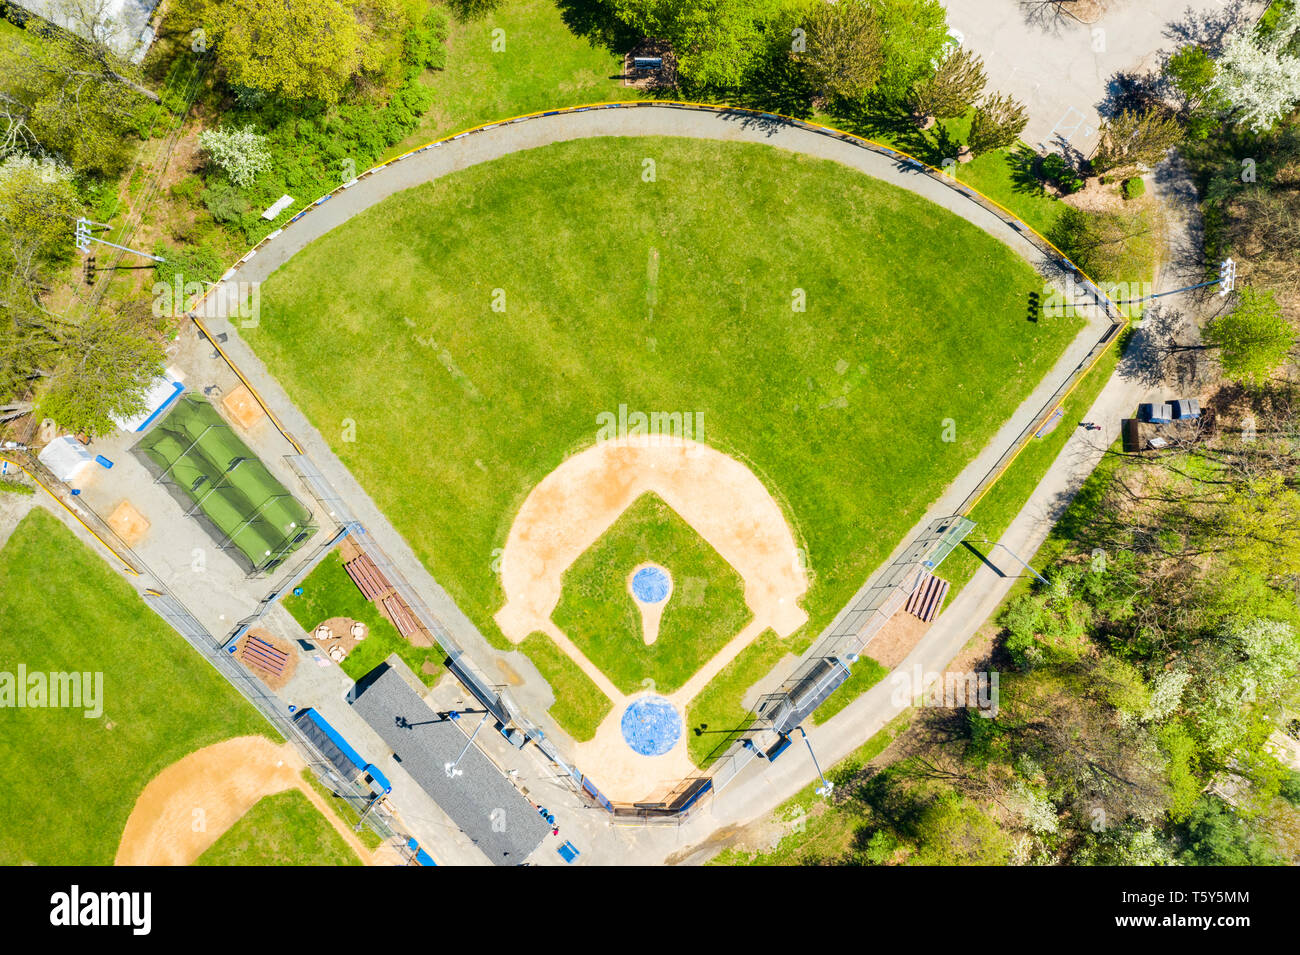 Vue de dessus d'un terrain de baseball Banque D'Images